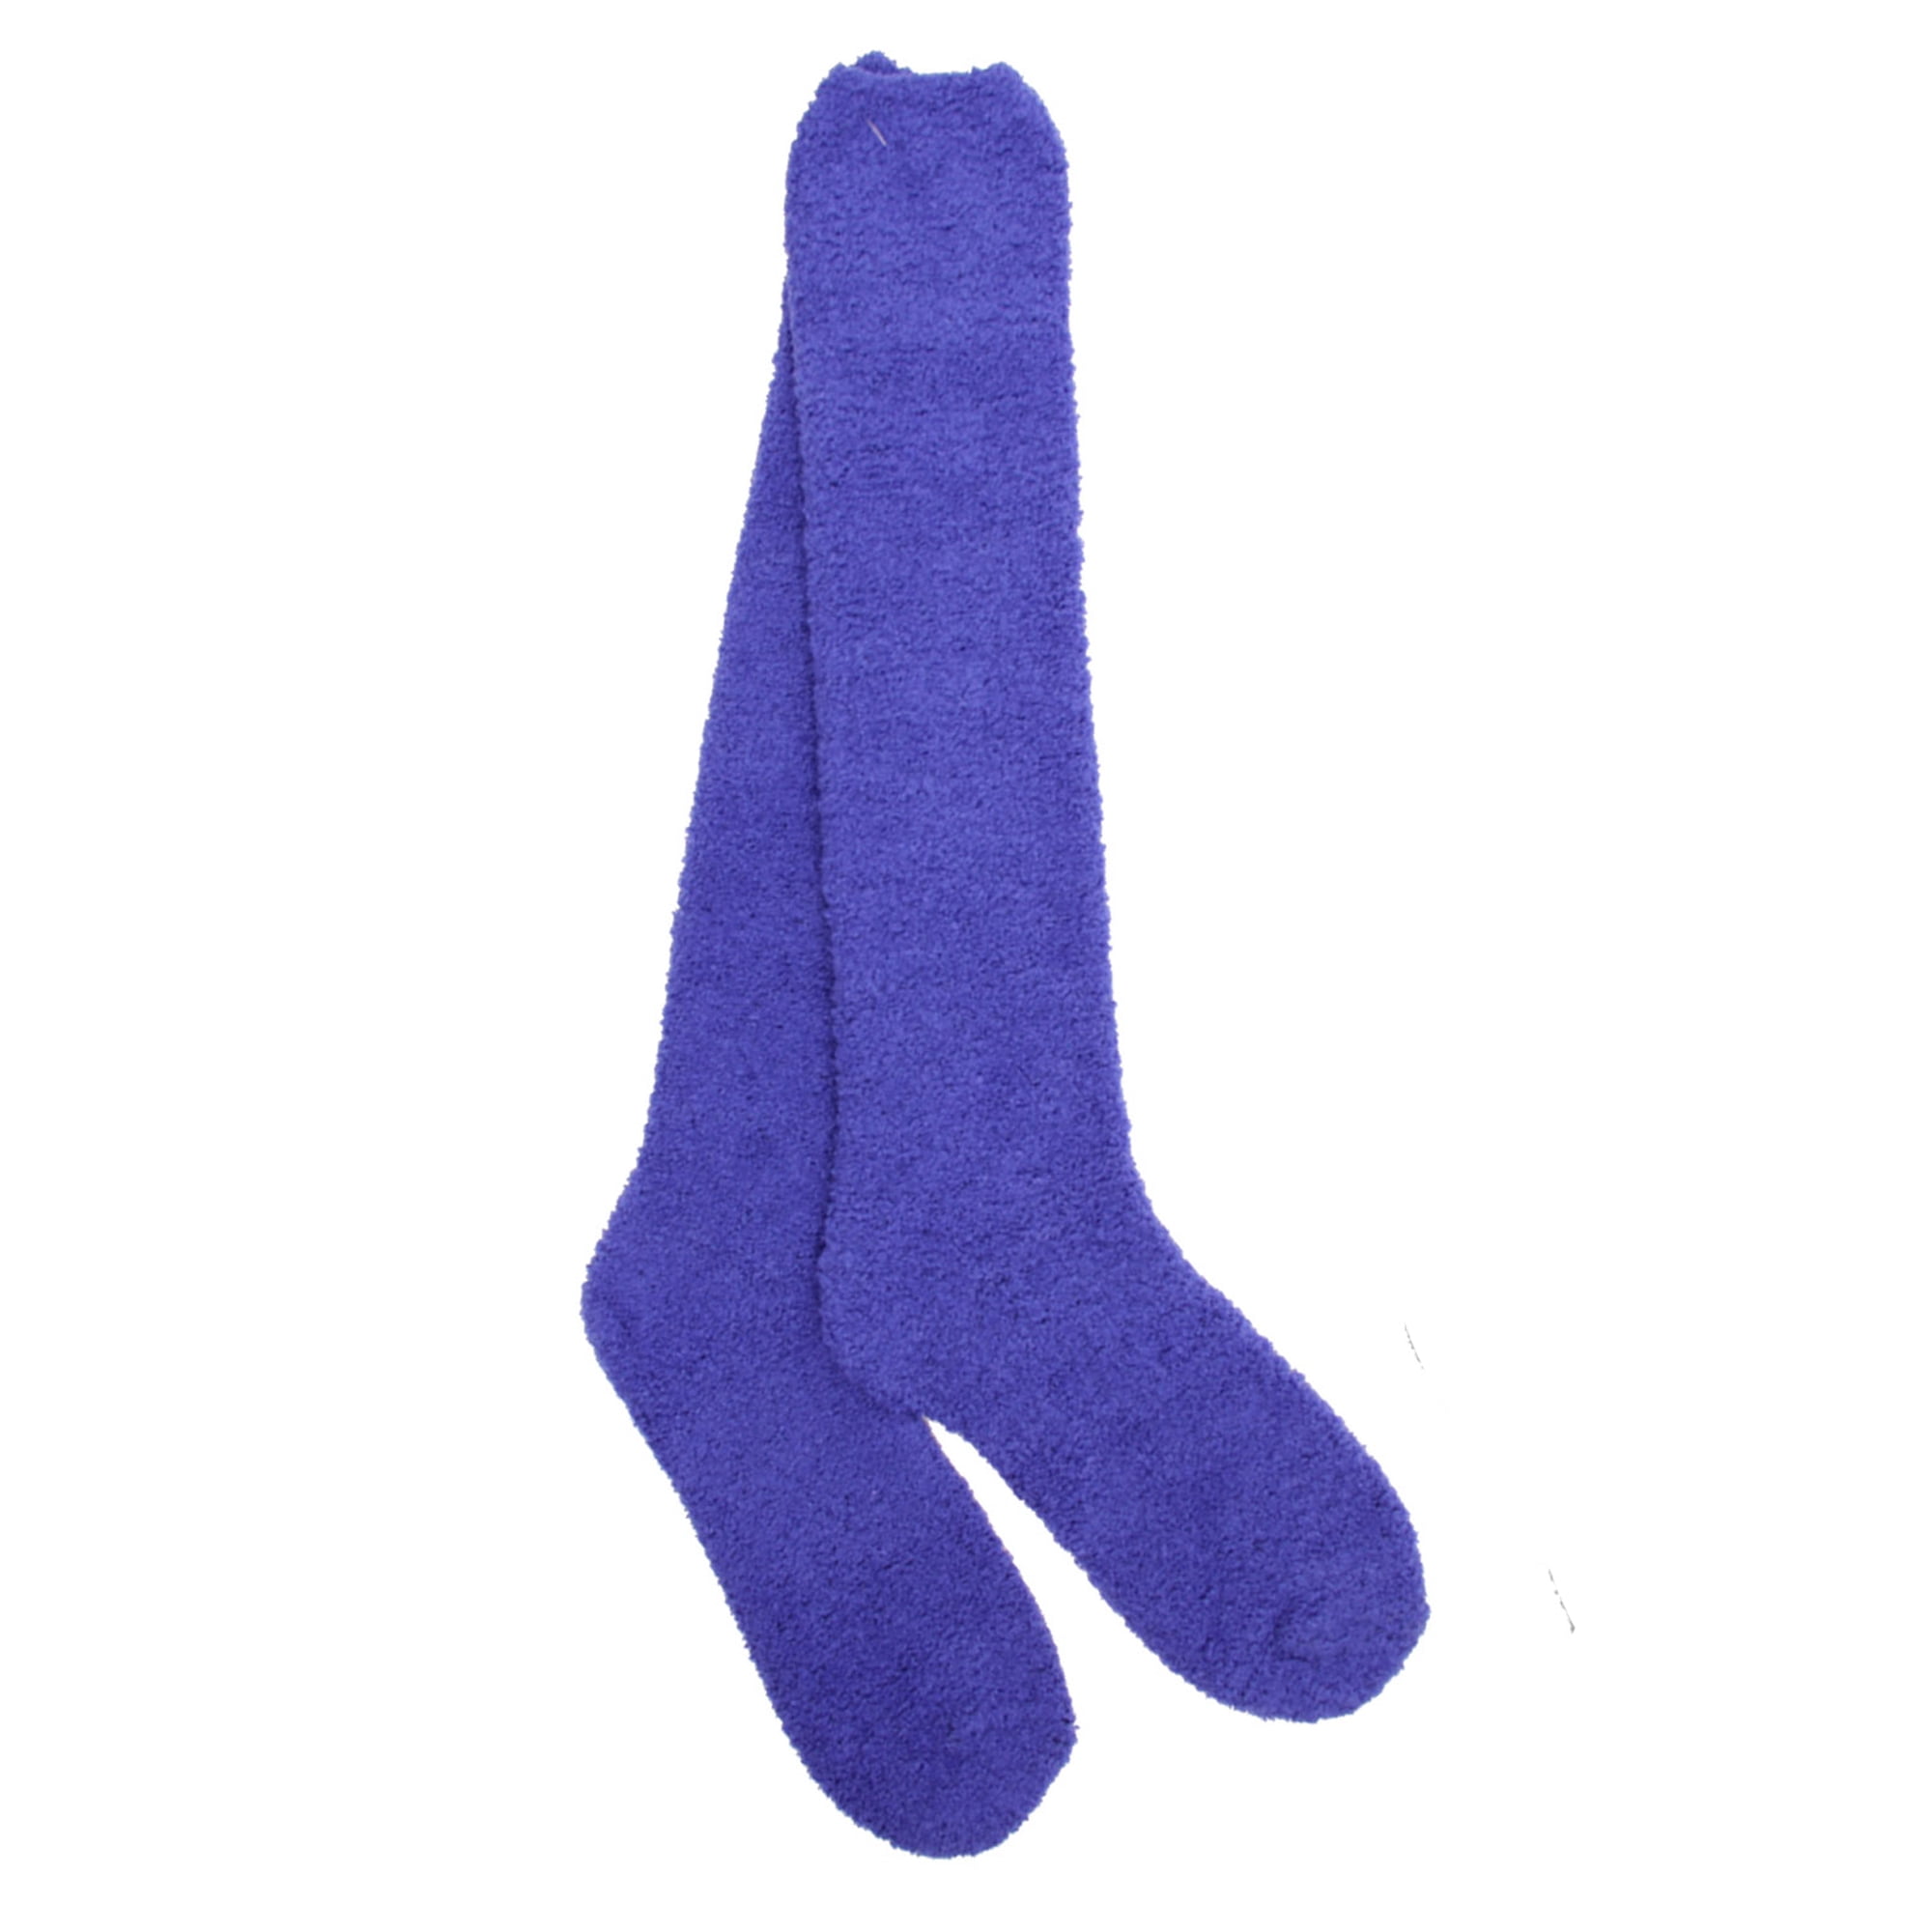 KOBLEN Colorful Dot Circles Long Socks for Women, Knee Socks